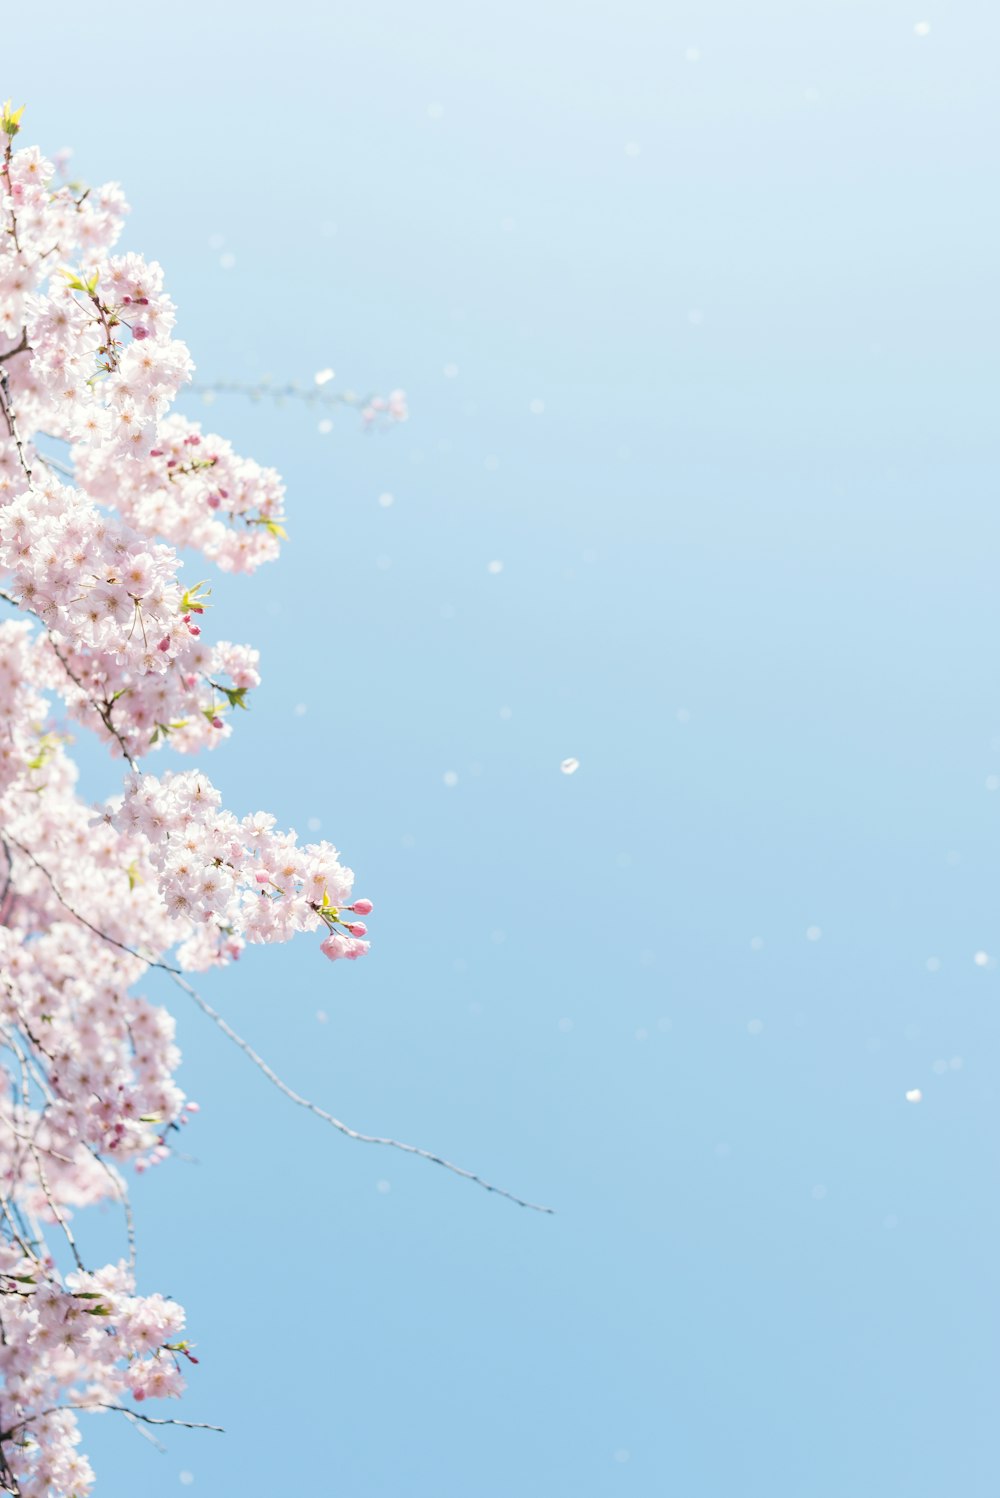 flor de cerezo bajo el cielo azul